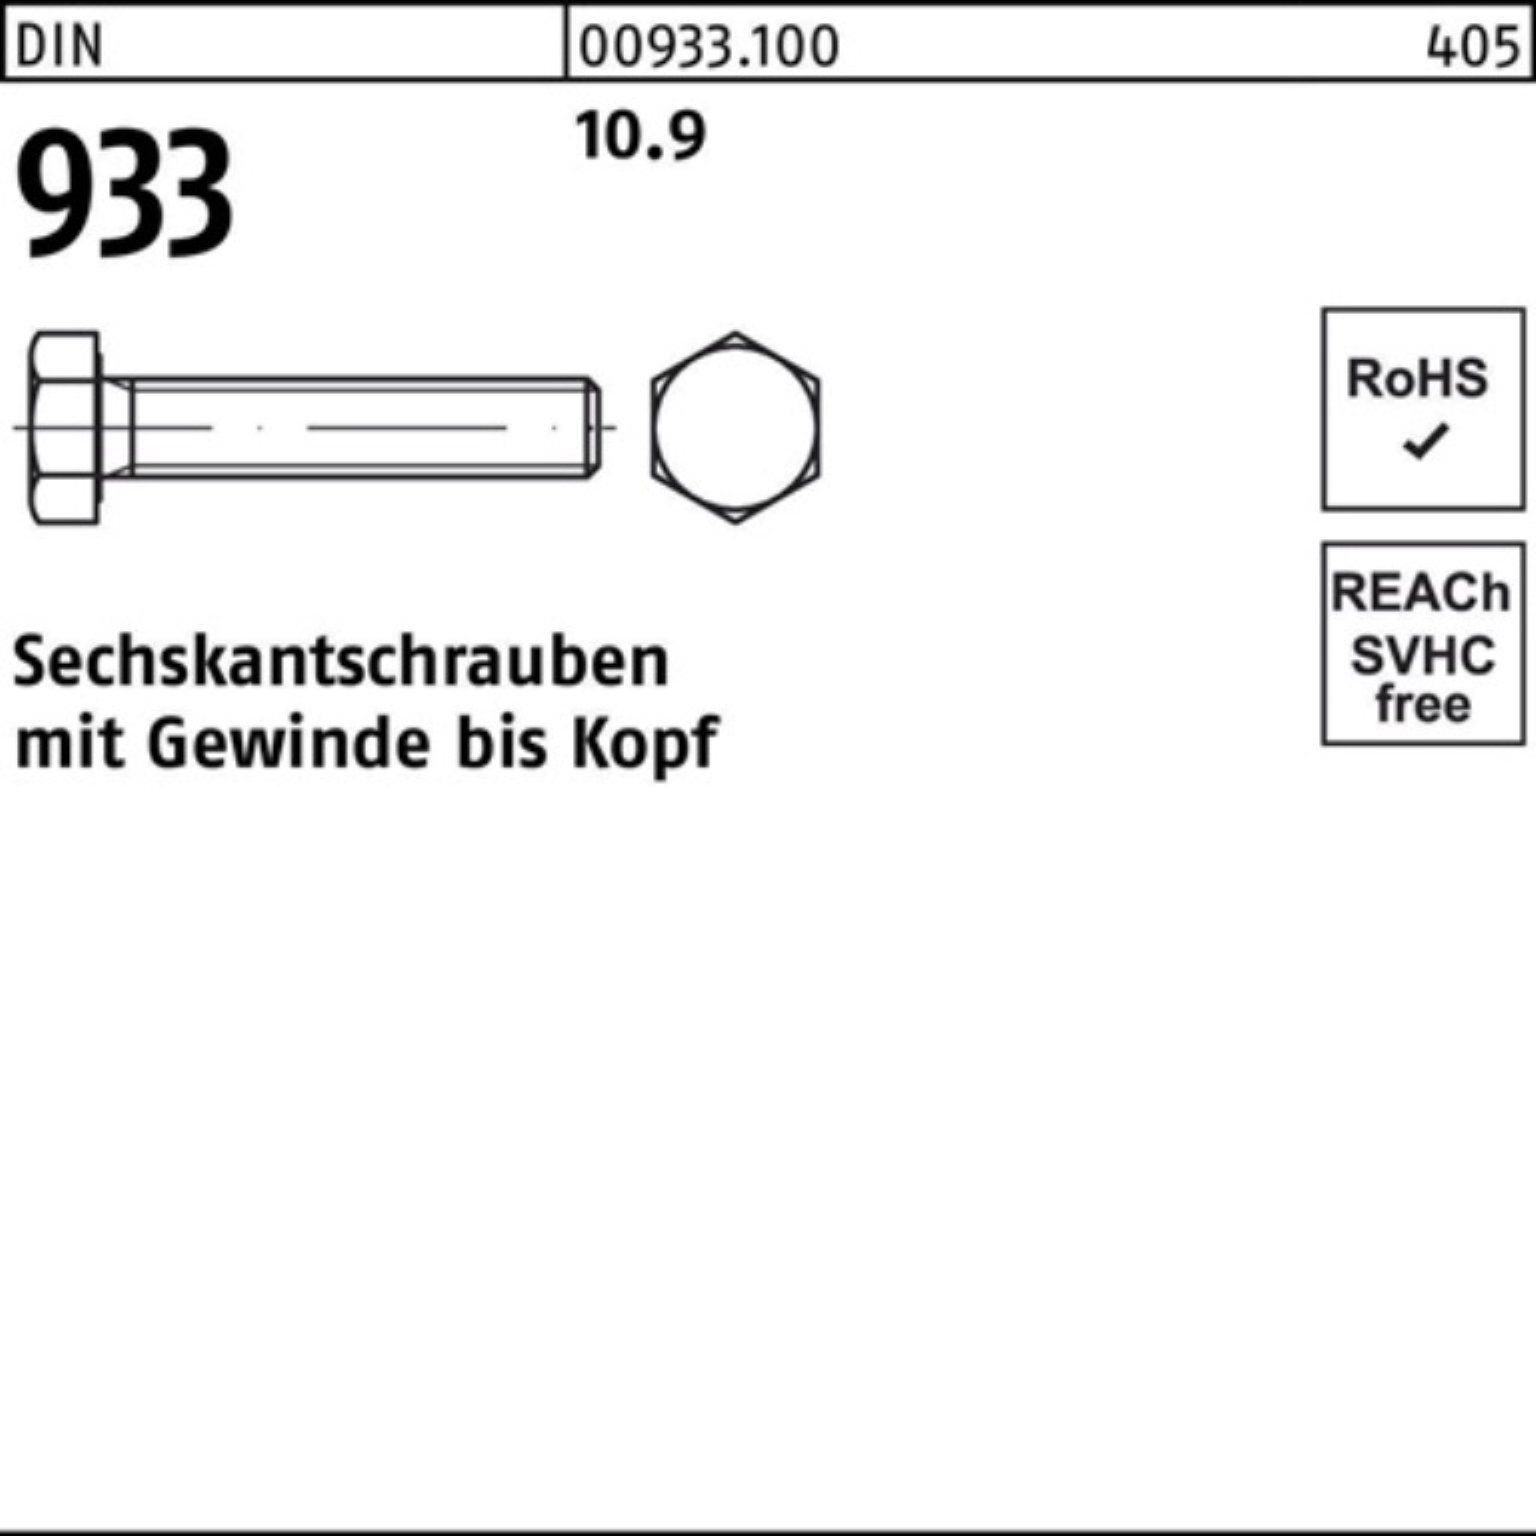 Reyher Sechskantschraube 100er Pack Sechskantschraube VG DIN M30x 10.9 90 1 DIN Stück 933 933